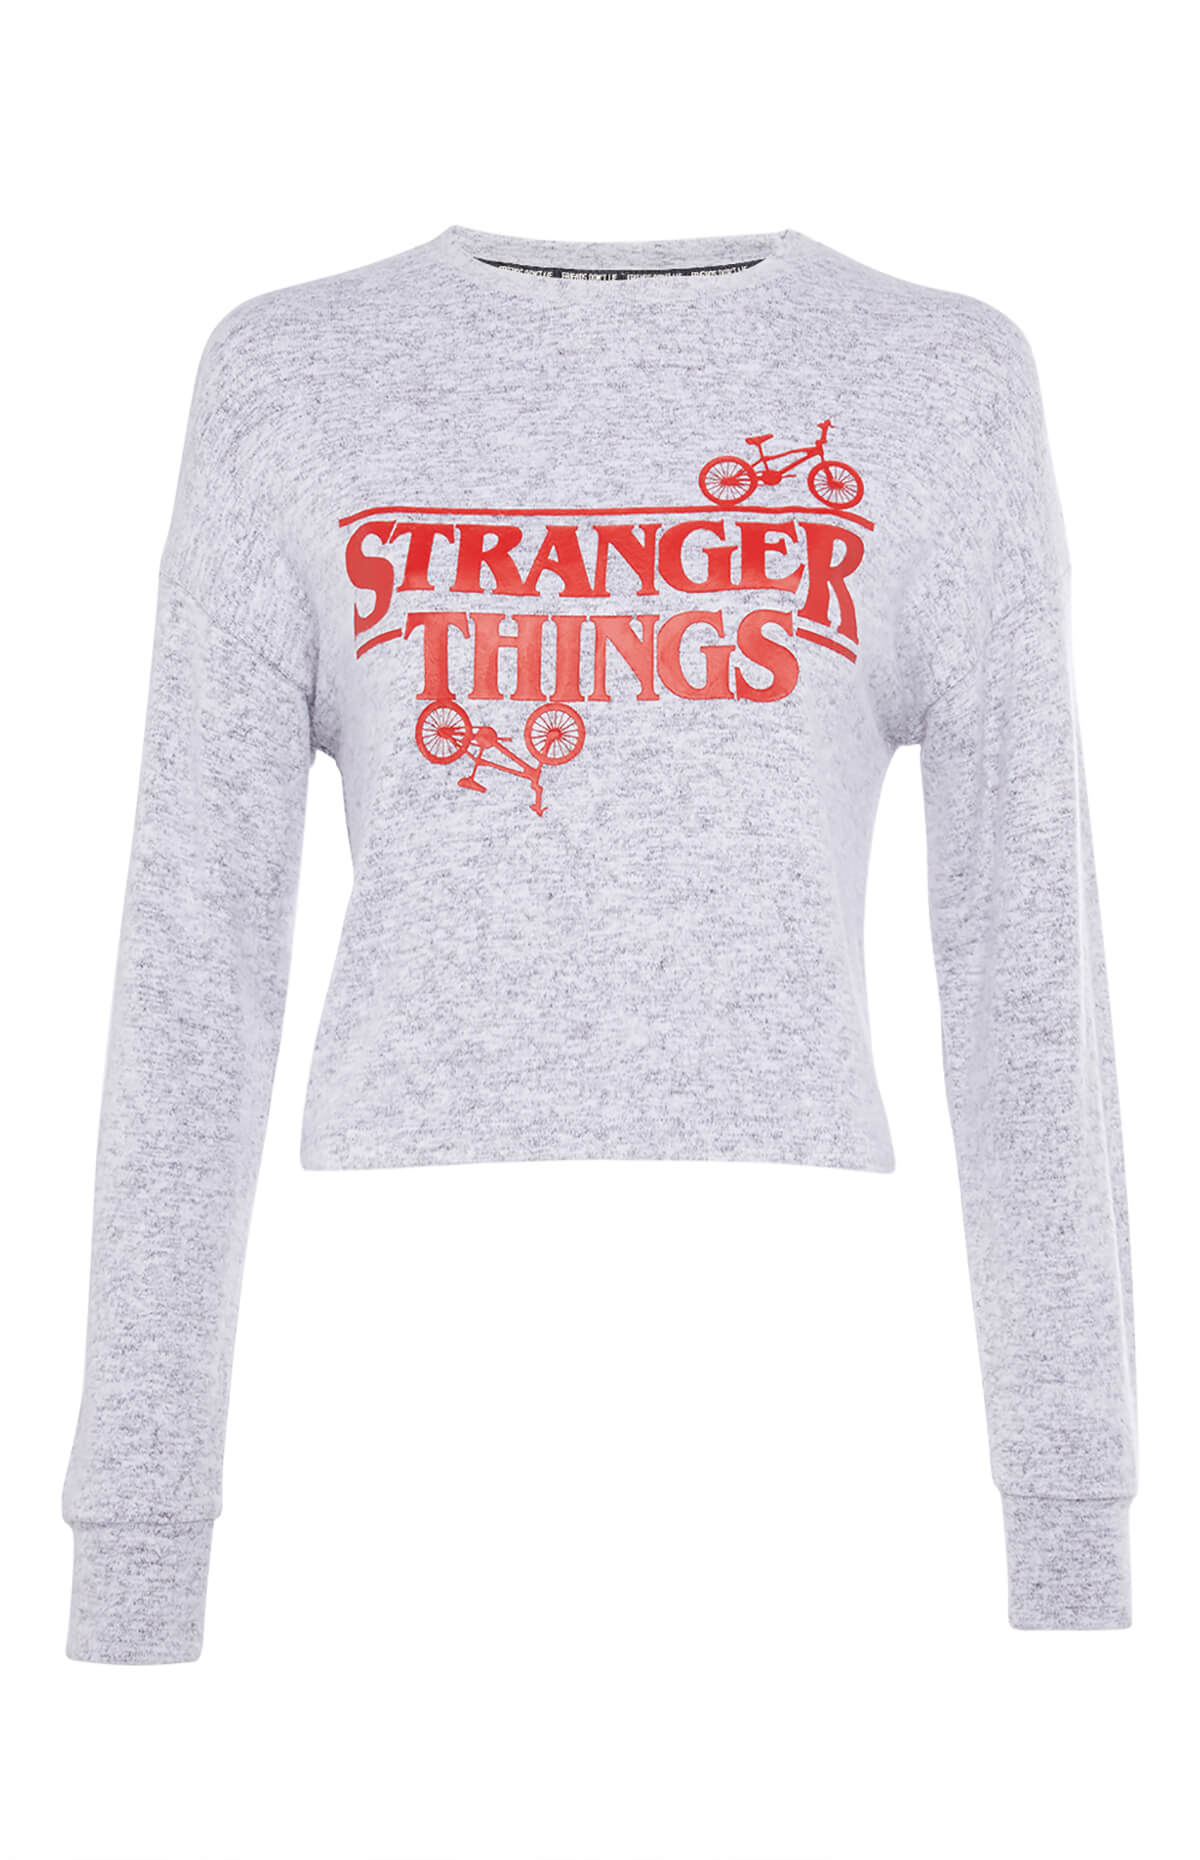 Ropa de Stranger Things exclusiva - primark kimball 4778301 01 dtr stranger ss top1